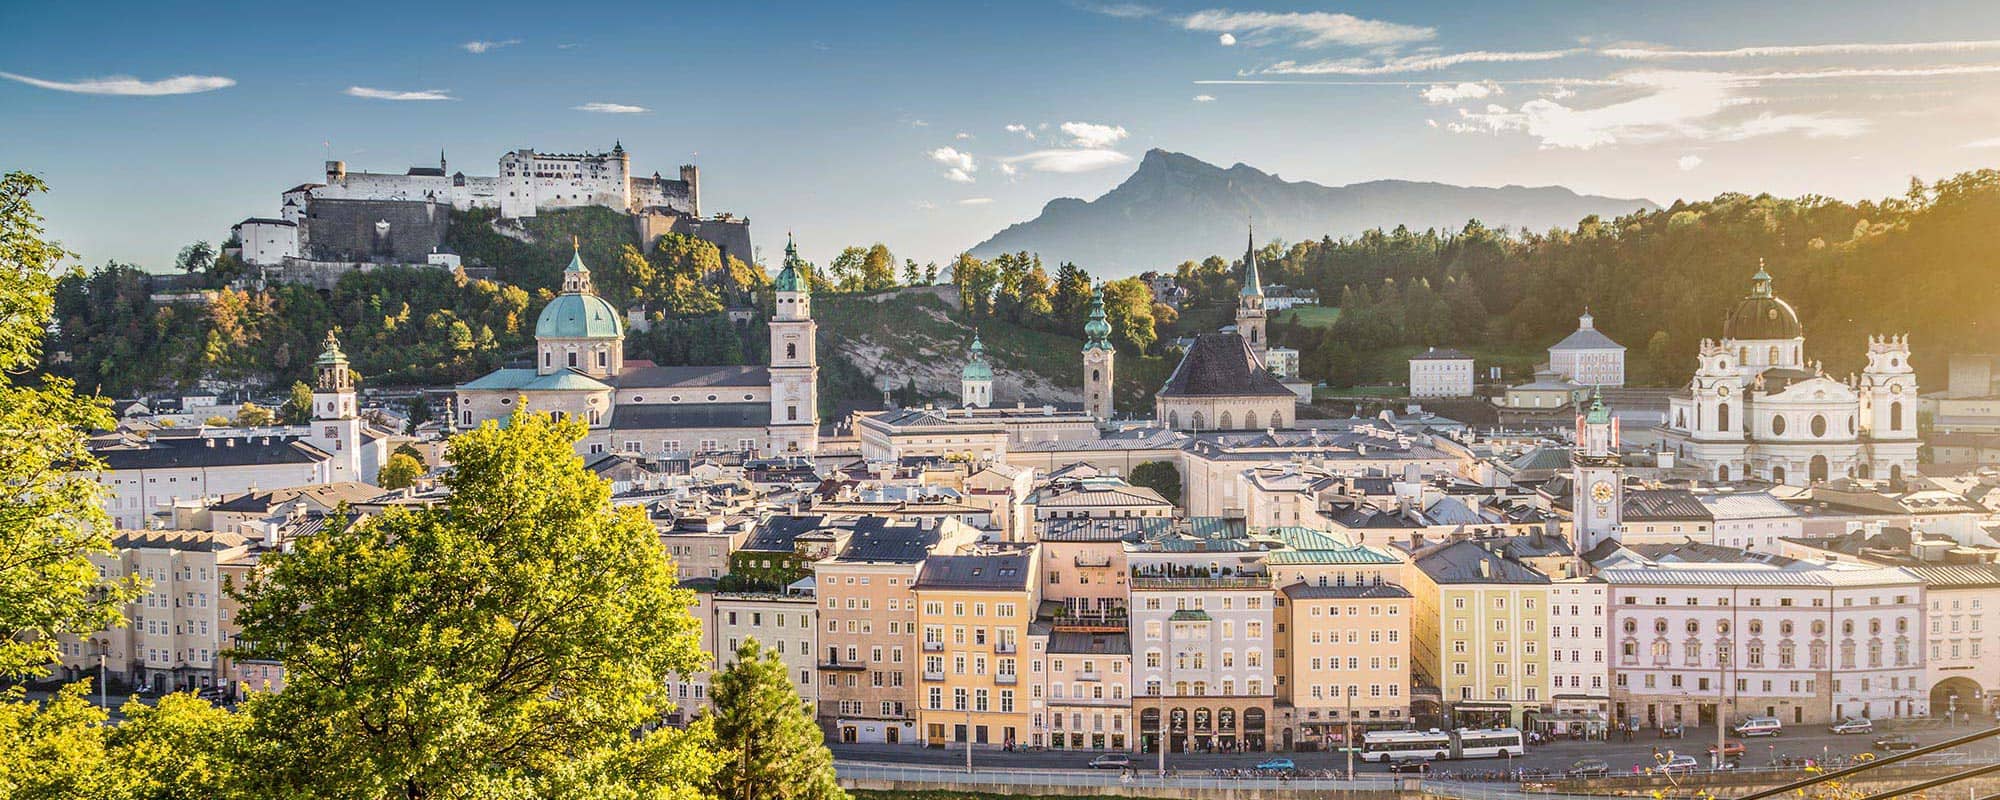 Wohnung in Salzburg suchen mit Denkstein Immobilien